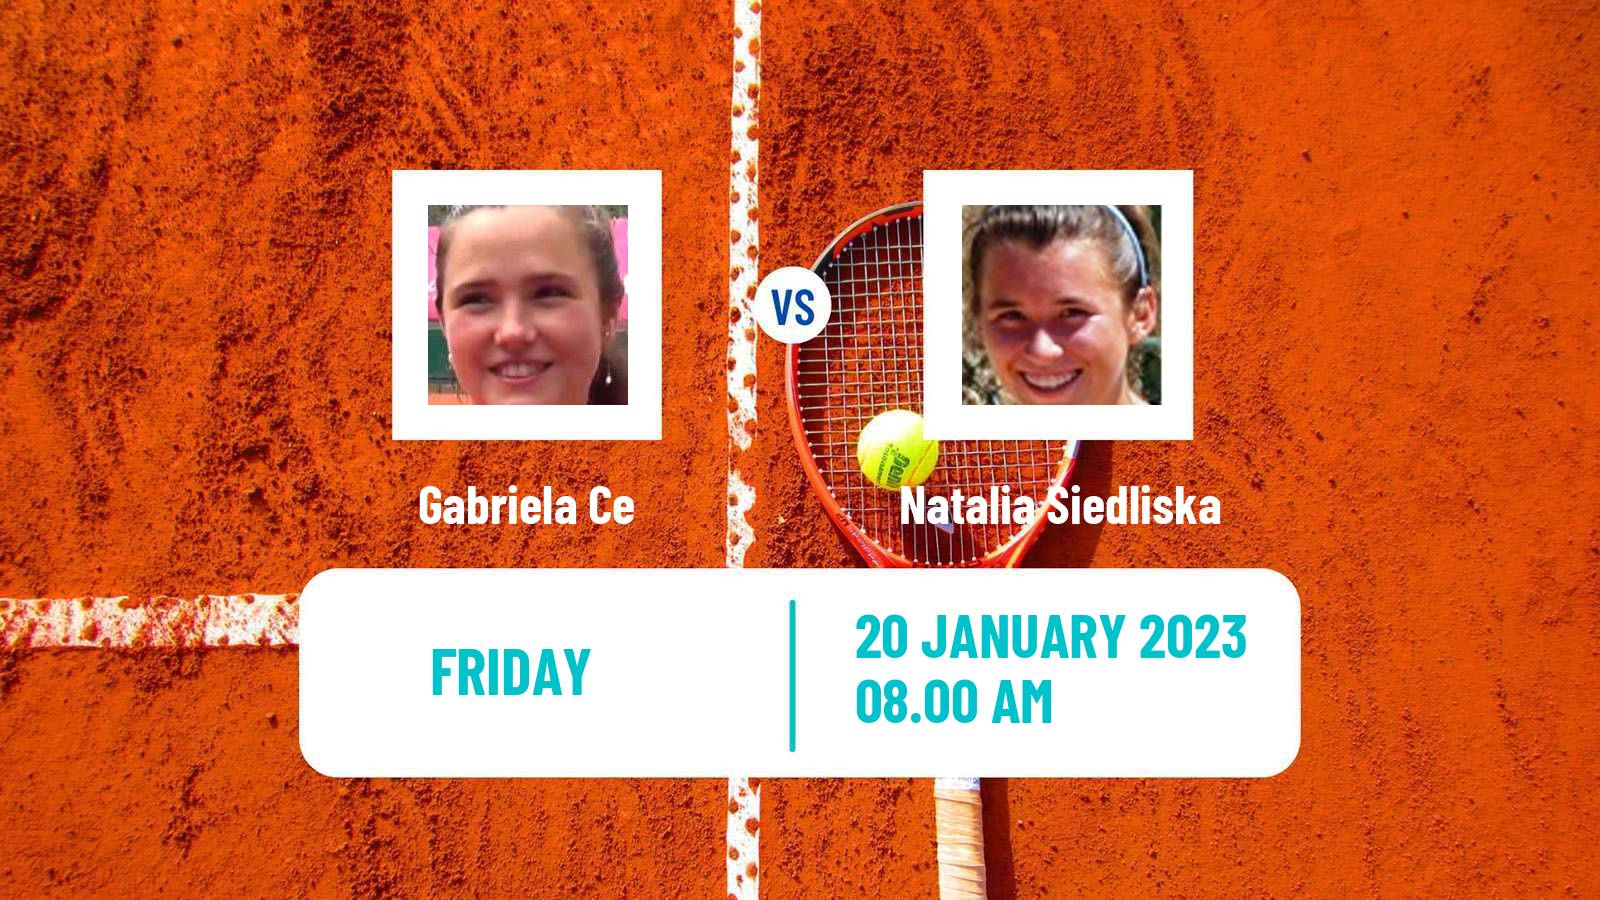 Tennis ITF Tournaments Gabriela Ce - Natalia Siedliska